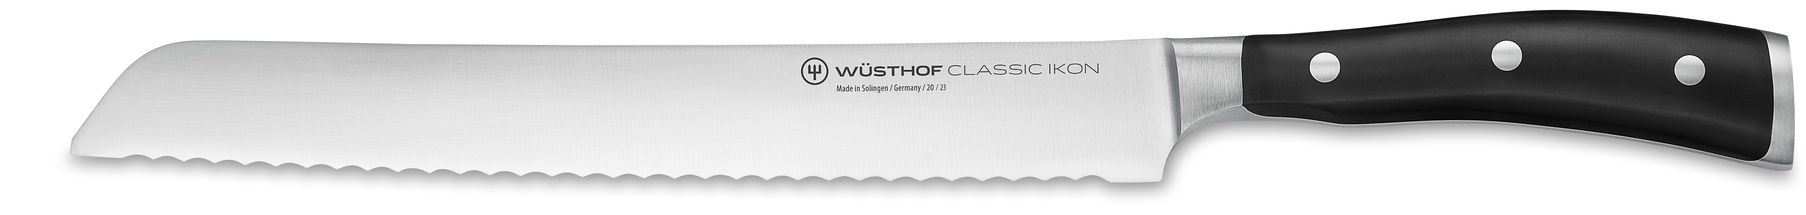 Couteau à pain Wusthof Classic Ikon de 23 cm